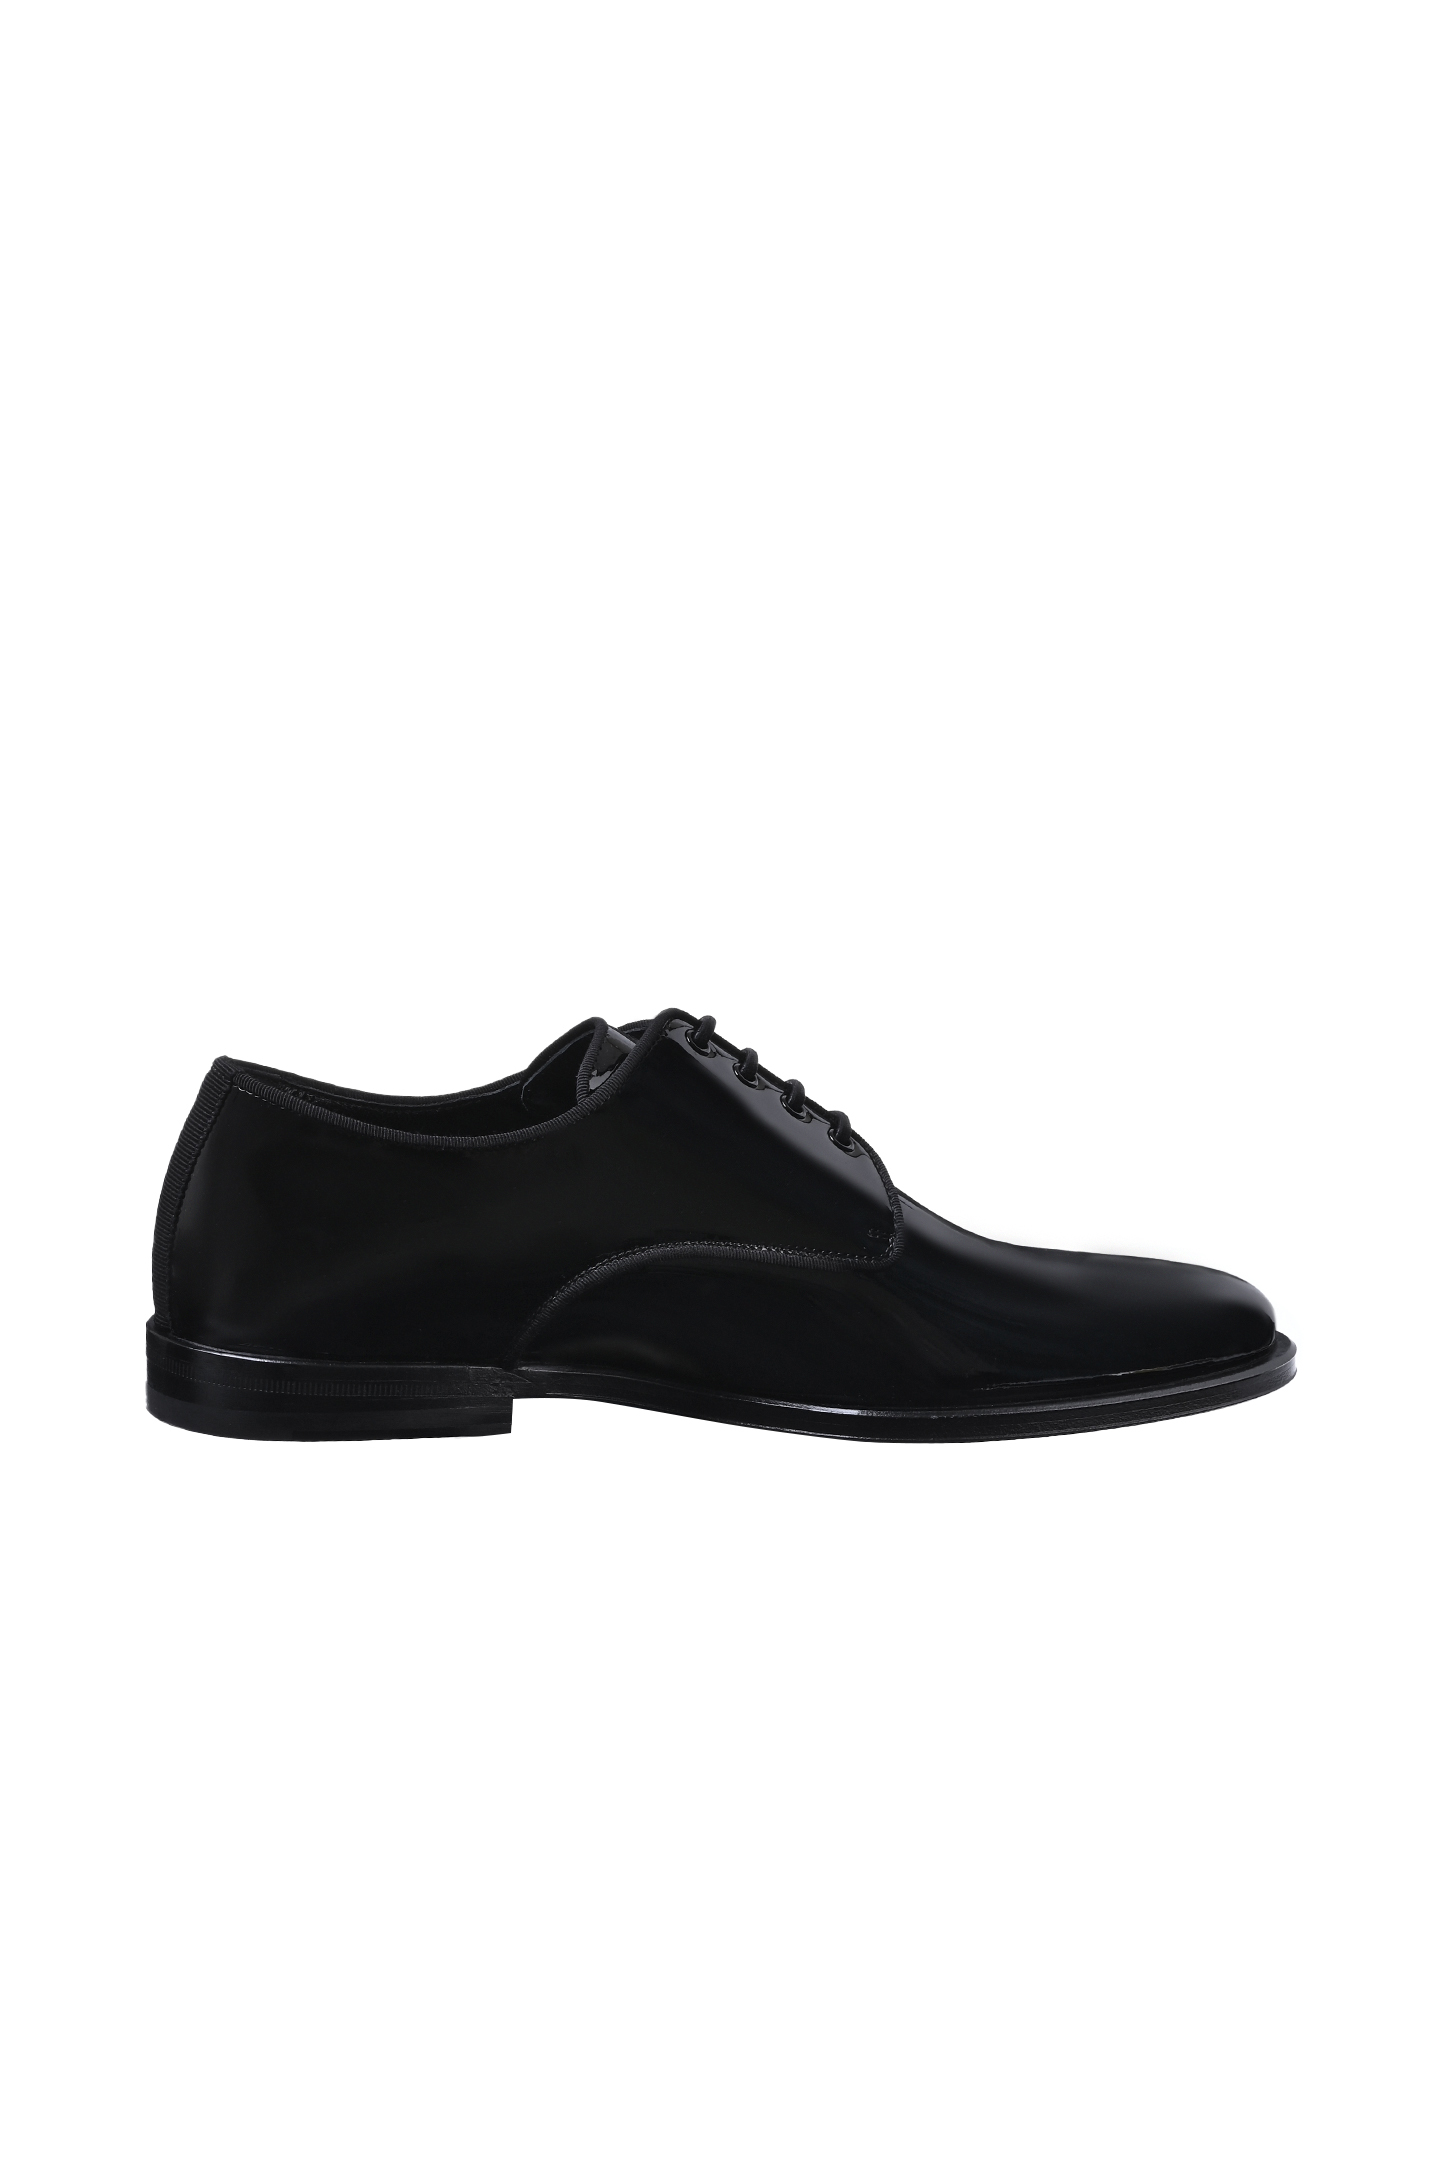 Туфли DOLCE & GABBANA A10597 AX651, цвет: Черный, Мужской